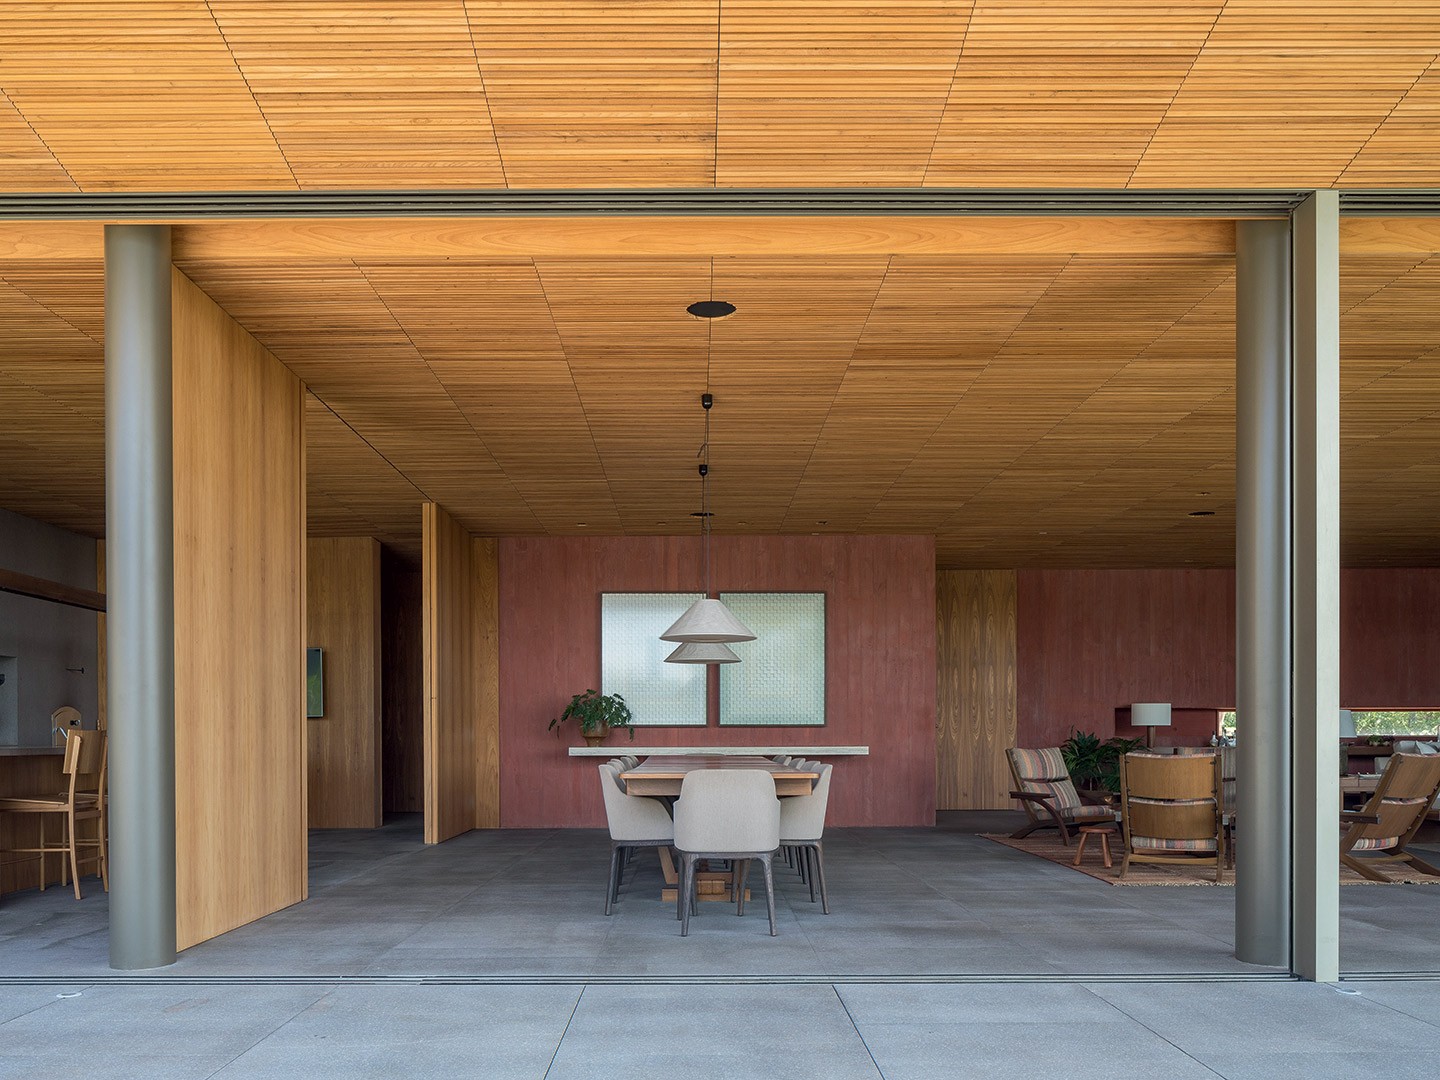 Grandes aberturas e brises de freijó garantem o clima aconchegante desta  casa de 1.680 m² - Casa Vogue